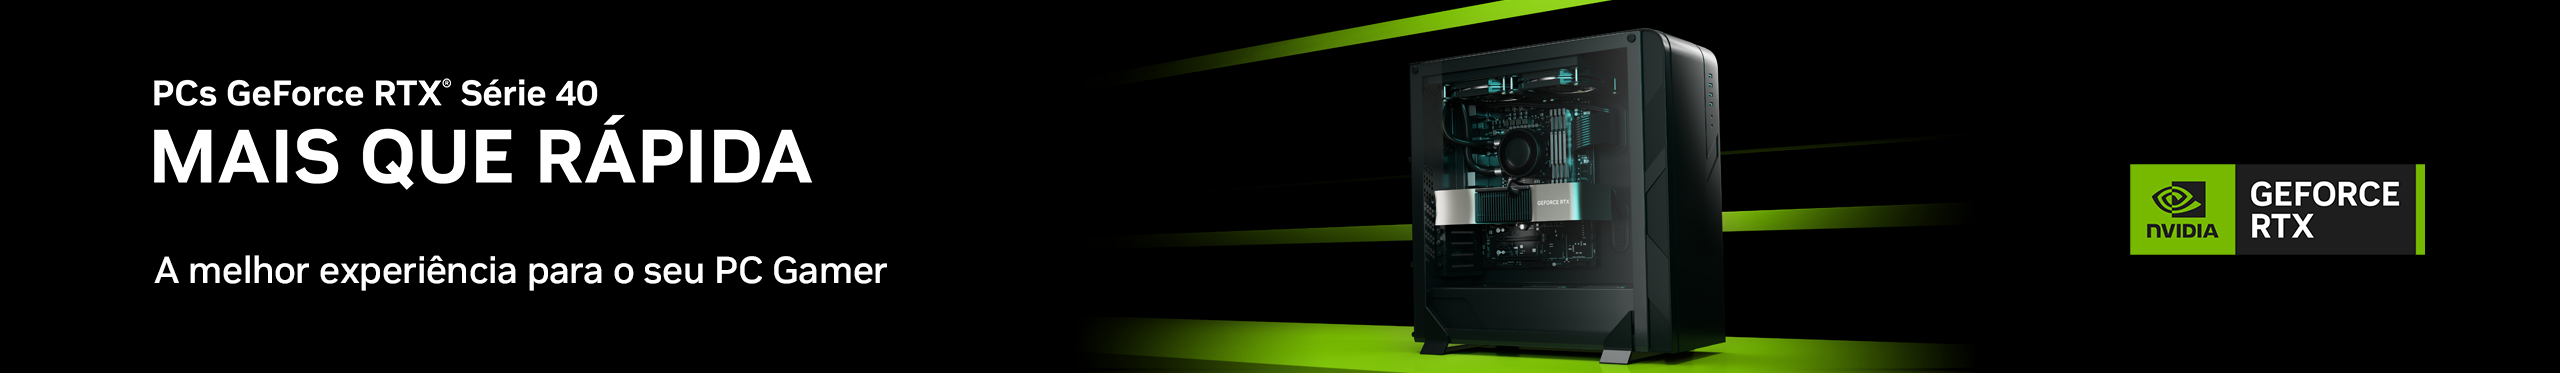 Nvidia - Geforce RTX Série 40 | A melhor experiência para seu PC Gamer. Vem ver!